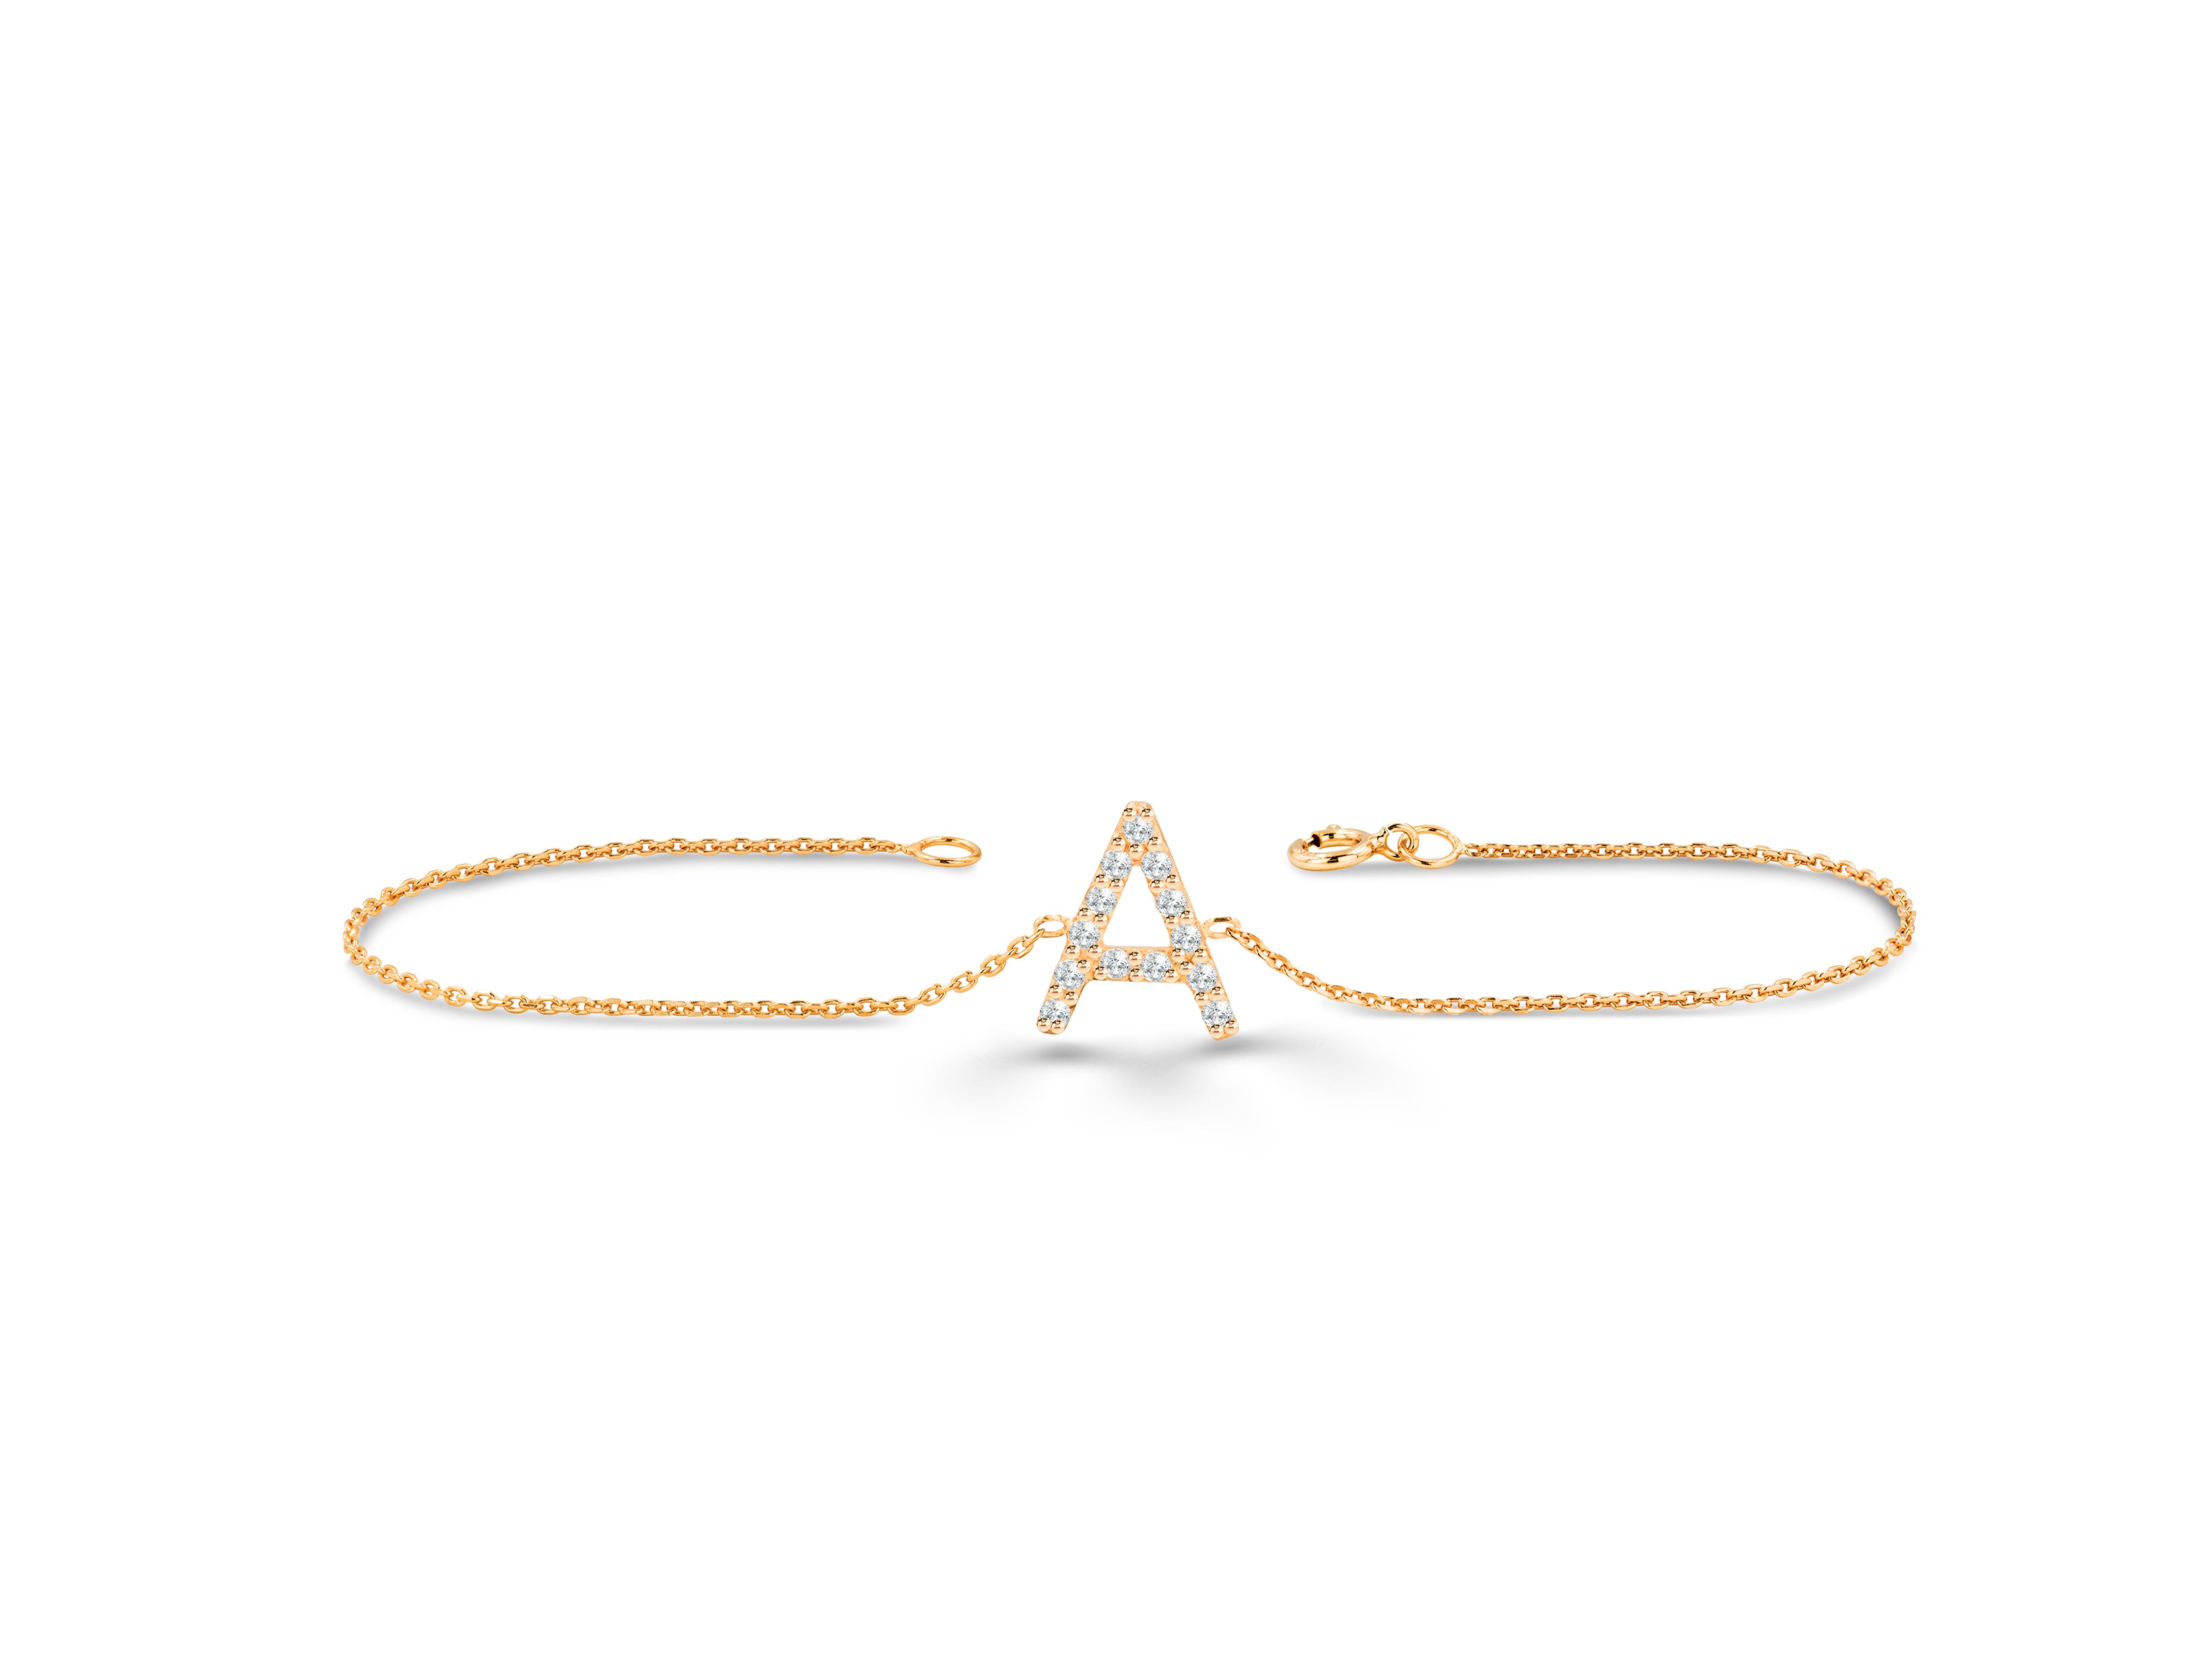 Beau et élégant, ce bracelet Initial est fabriqué en or pur et se compose de diamants véritables et naturels. Ce bracelet peut être personnalisé avec les initiales ou les lettres que vous souhaitez. La couleur de l'or peut également être